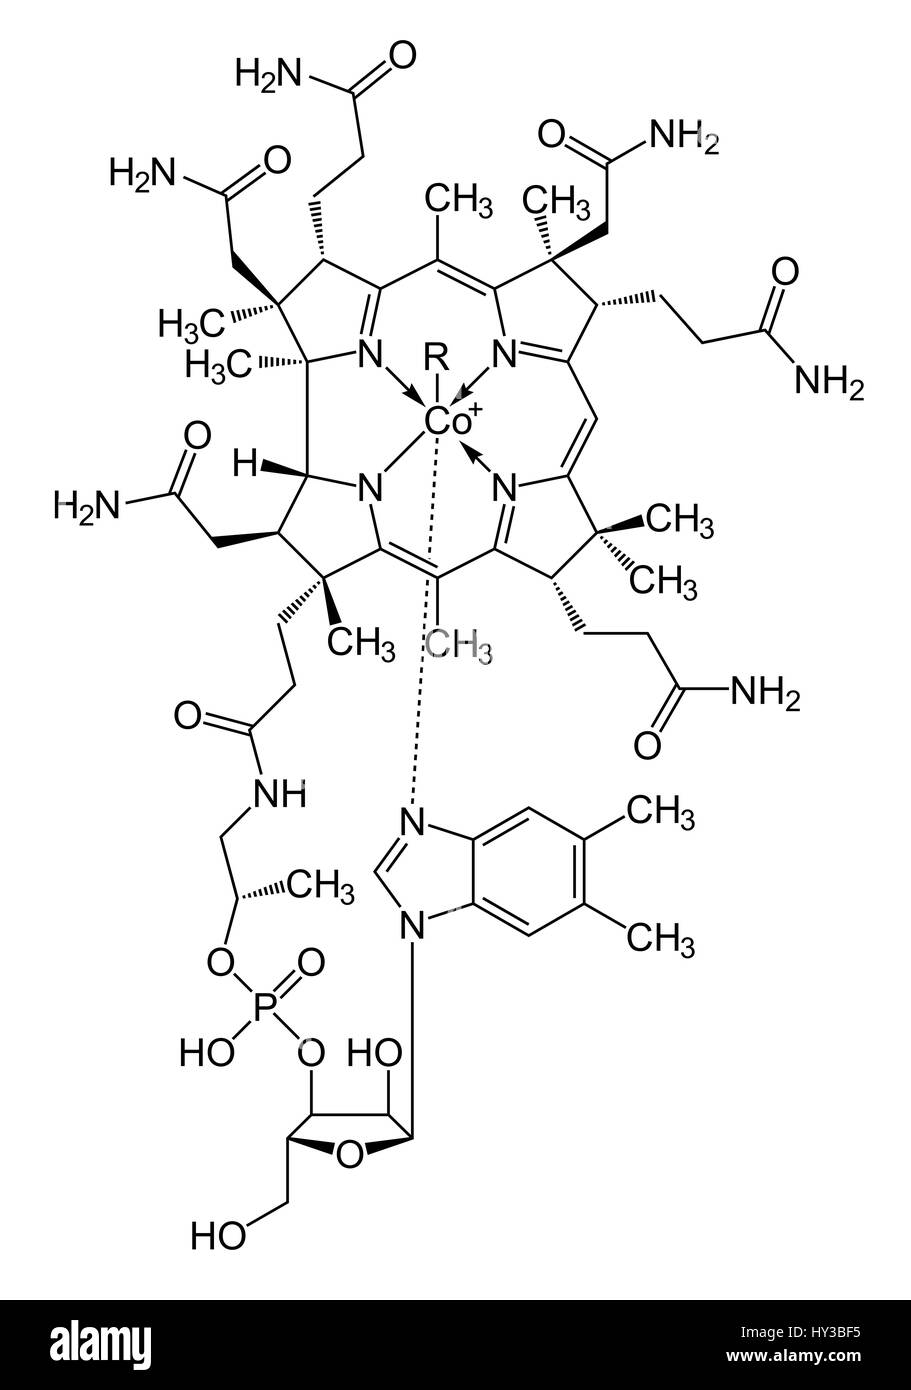 La vitamine B12 (cobalamine), molécule formule topologique (structure chimique). Formule topologique de la cyanocobalamine (C63.H88.fr N14.O14.P) forme de vitamine B12. Cette vitamine joue un rôle clé dans le fonctionnement normal du cerveau et du système nerveux. Banque D'Images